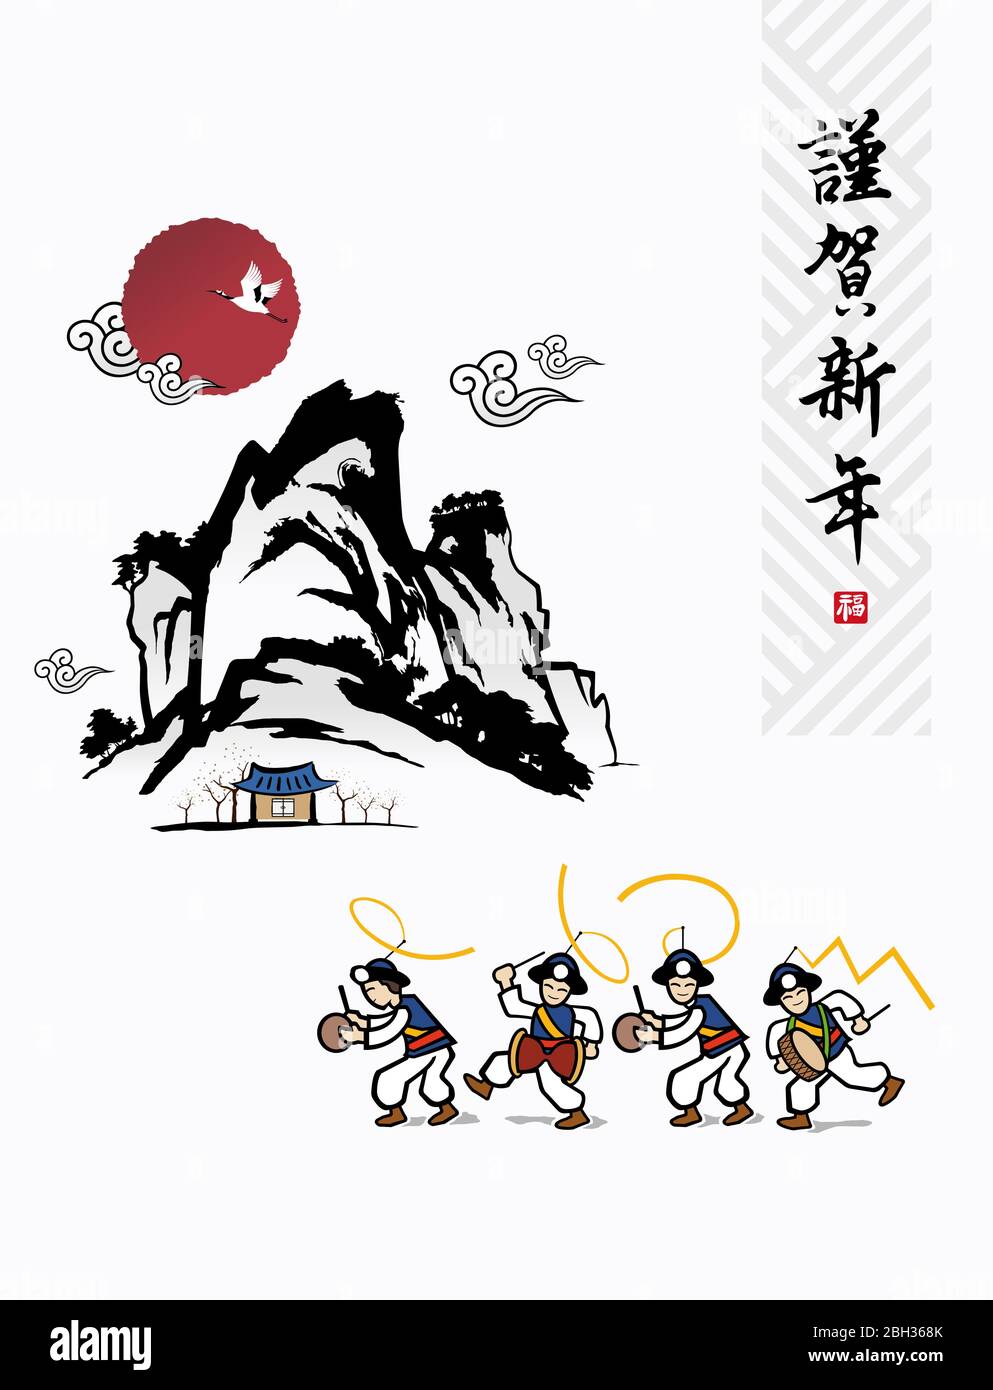 Frohes neues Jahr, Übersetzung des chinesischen Textes: Frohes neues Jahr, Kalligraphie und koreanische traditionelle koreanische Malerei Vektor-Illustration. Stock Vektor